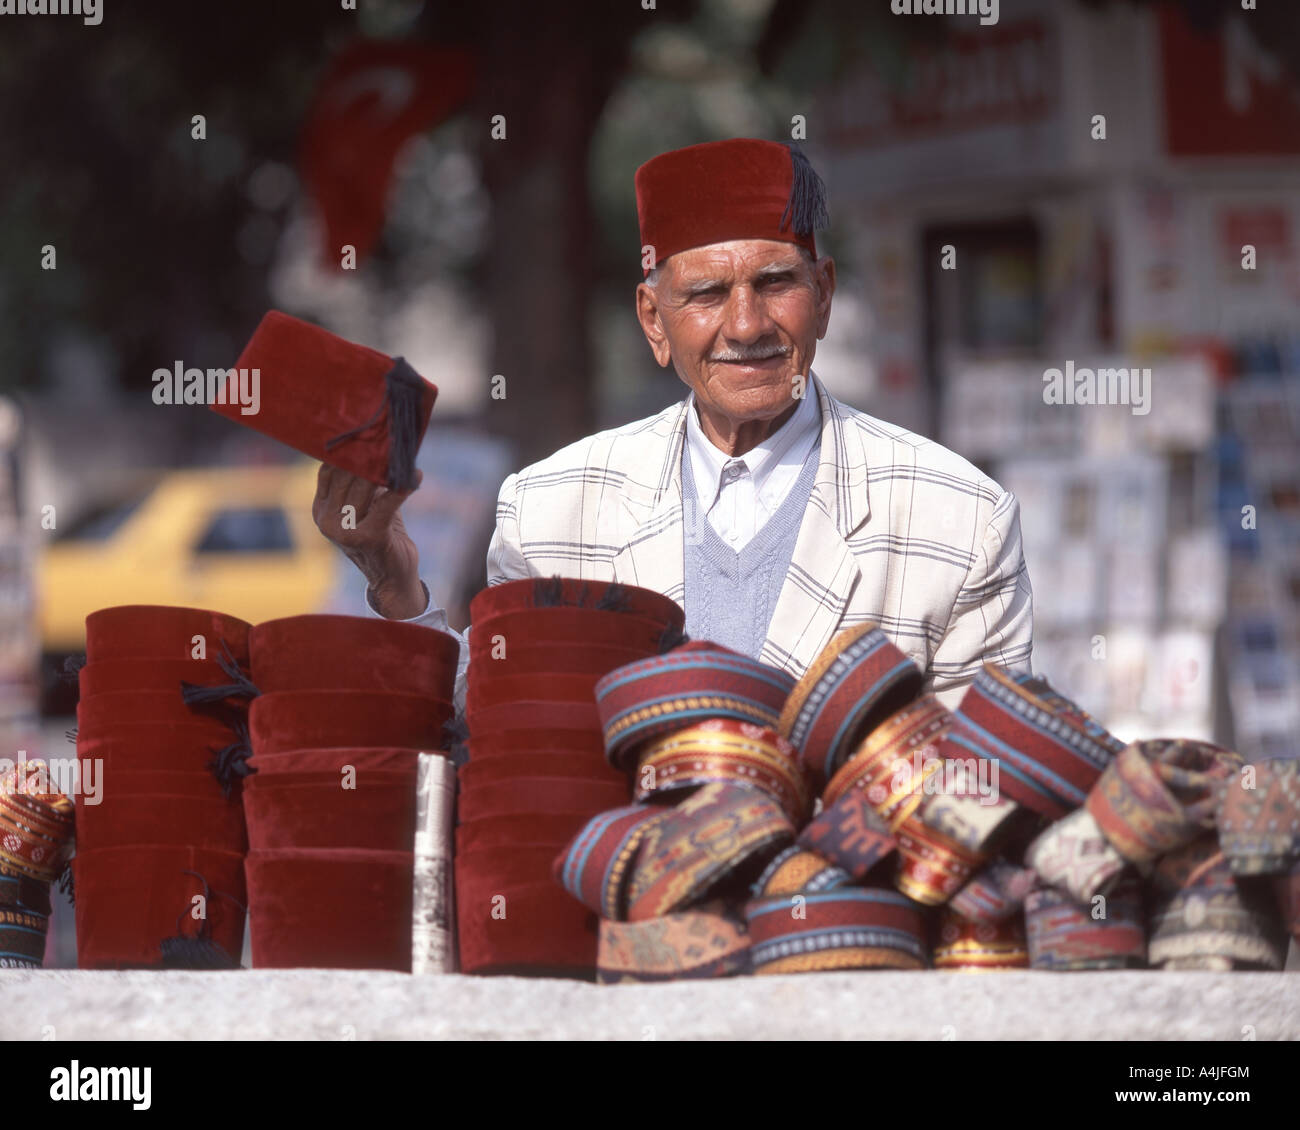 Man selling Turkish hats on street, Istanbul, Turkey Stock Photo